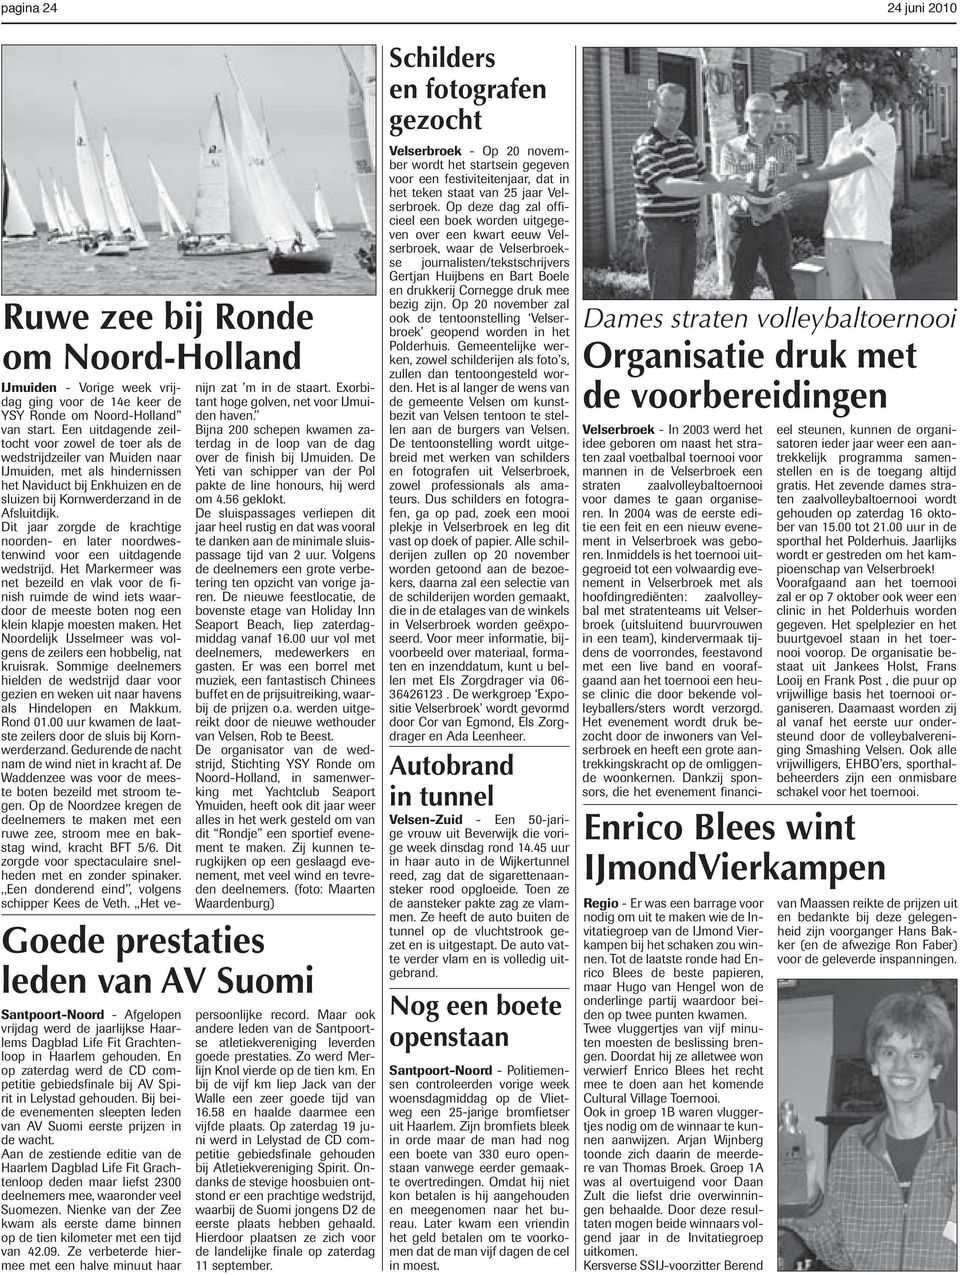 Aan de zestiende editie van de Haarlem Dagblad Life Fit Grachtenloop deden maar liefst 2300 deelnemers mee, waaronder veel Suomezen.